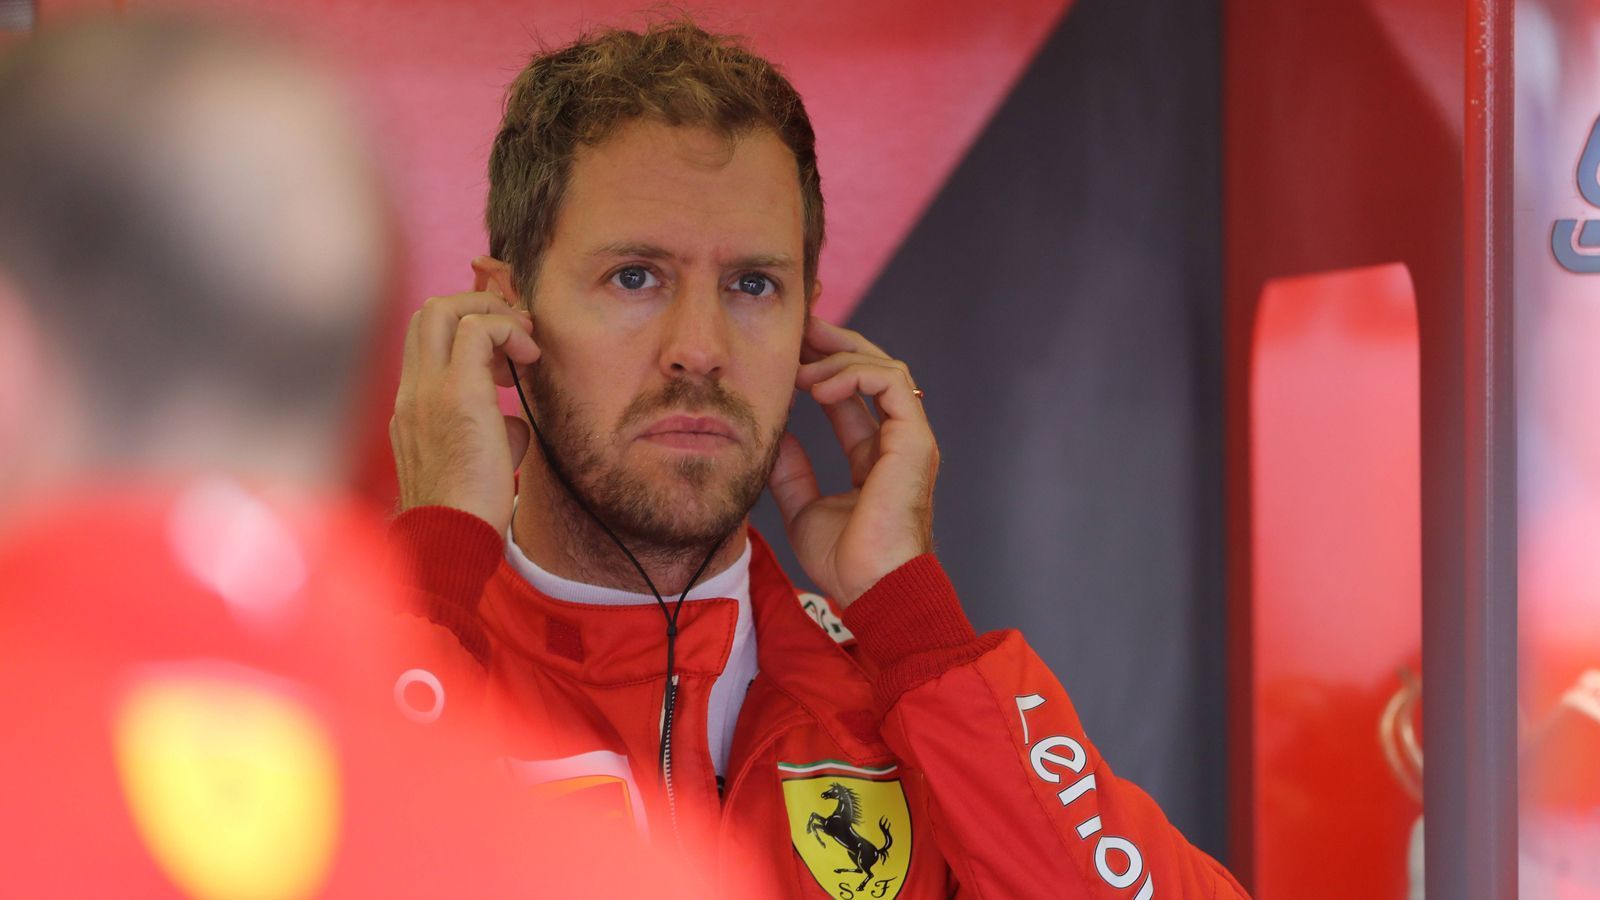 
                <strong>1. Sebastian Vettel</strong><br>
                Punkte insgesamt: 24Aktuelle Punkte: 9Punkte 2014: 0Punkte 2015: 3Punkte 2016: 6Punkte 2017: 3Punkte 2018: 5Punkte 2019: 7
              